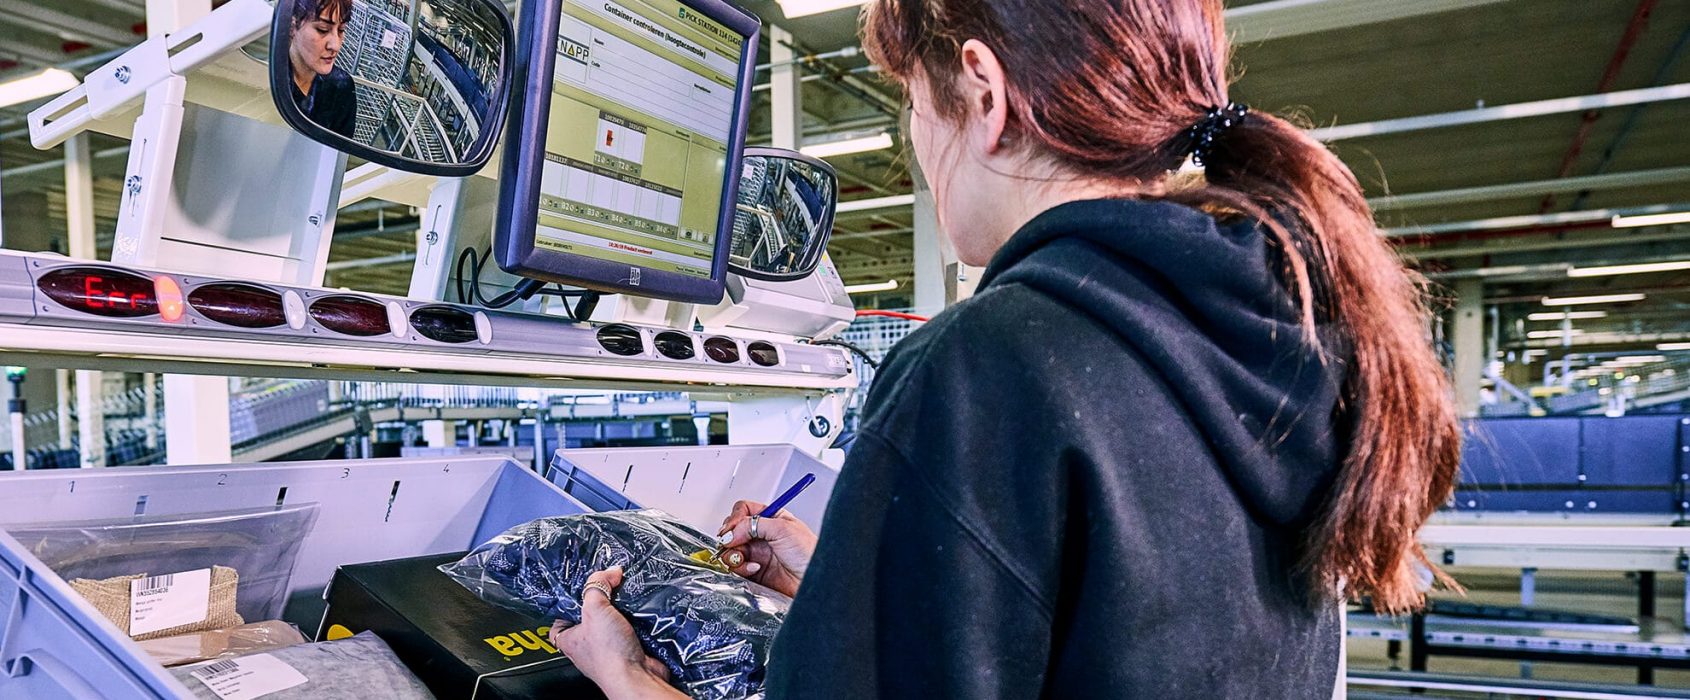 Automatisierung für Retail: Auftragsbearbeitung am Ware-zur-Person-Arbeitsplatz